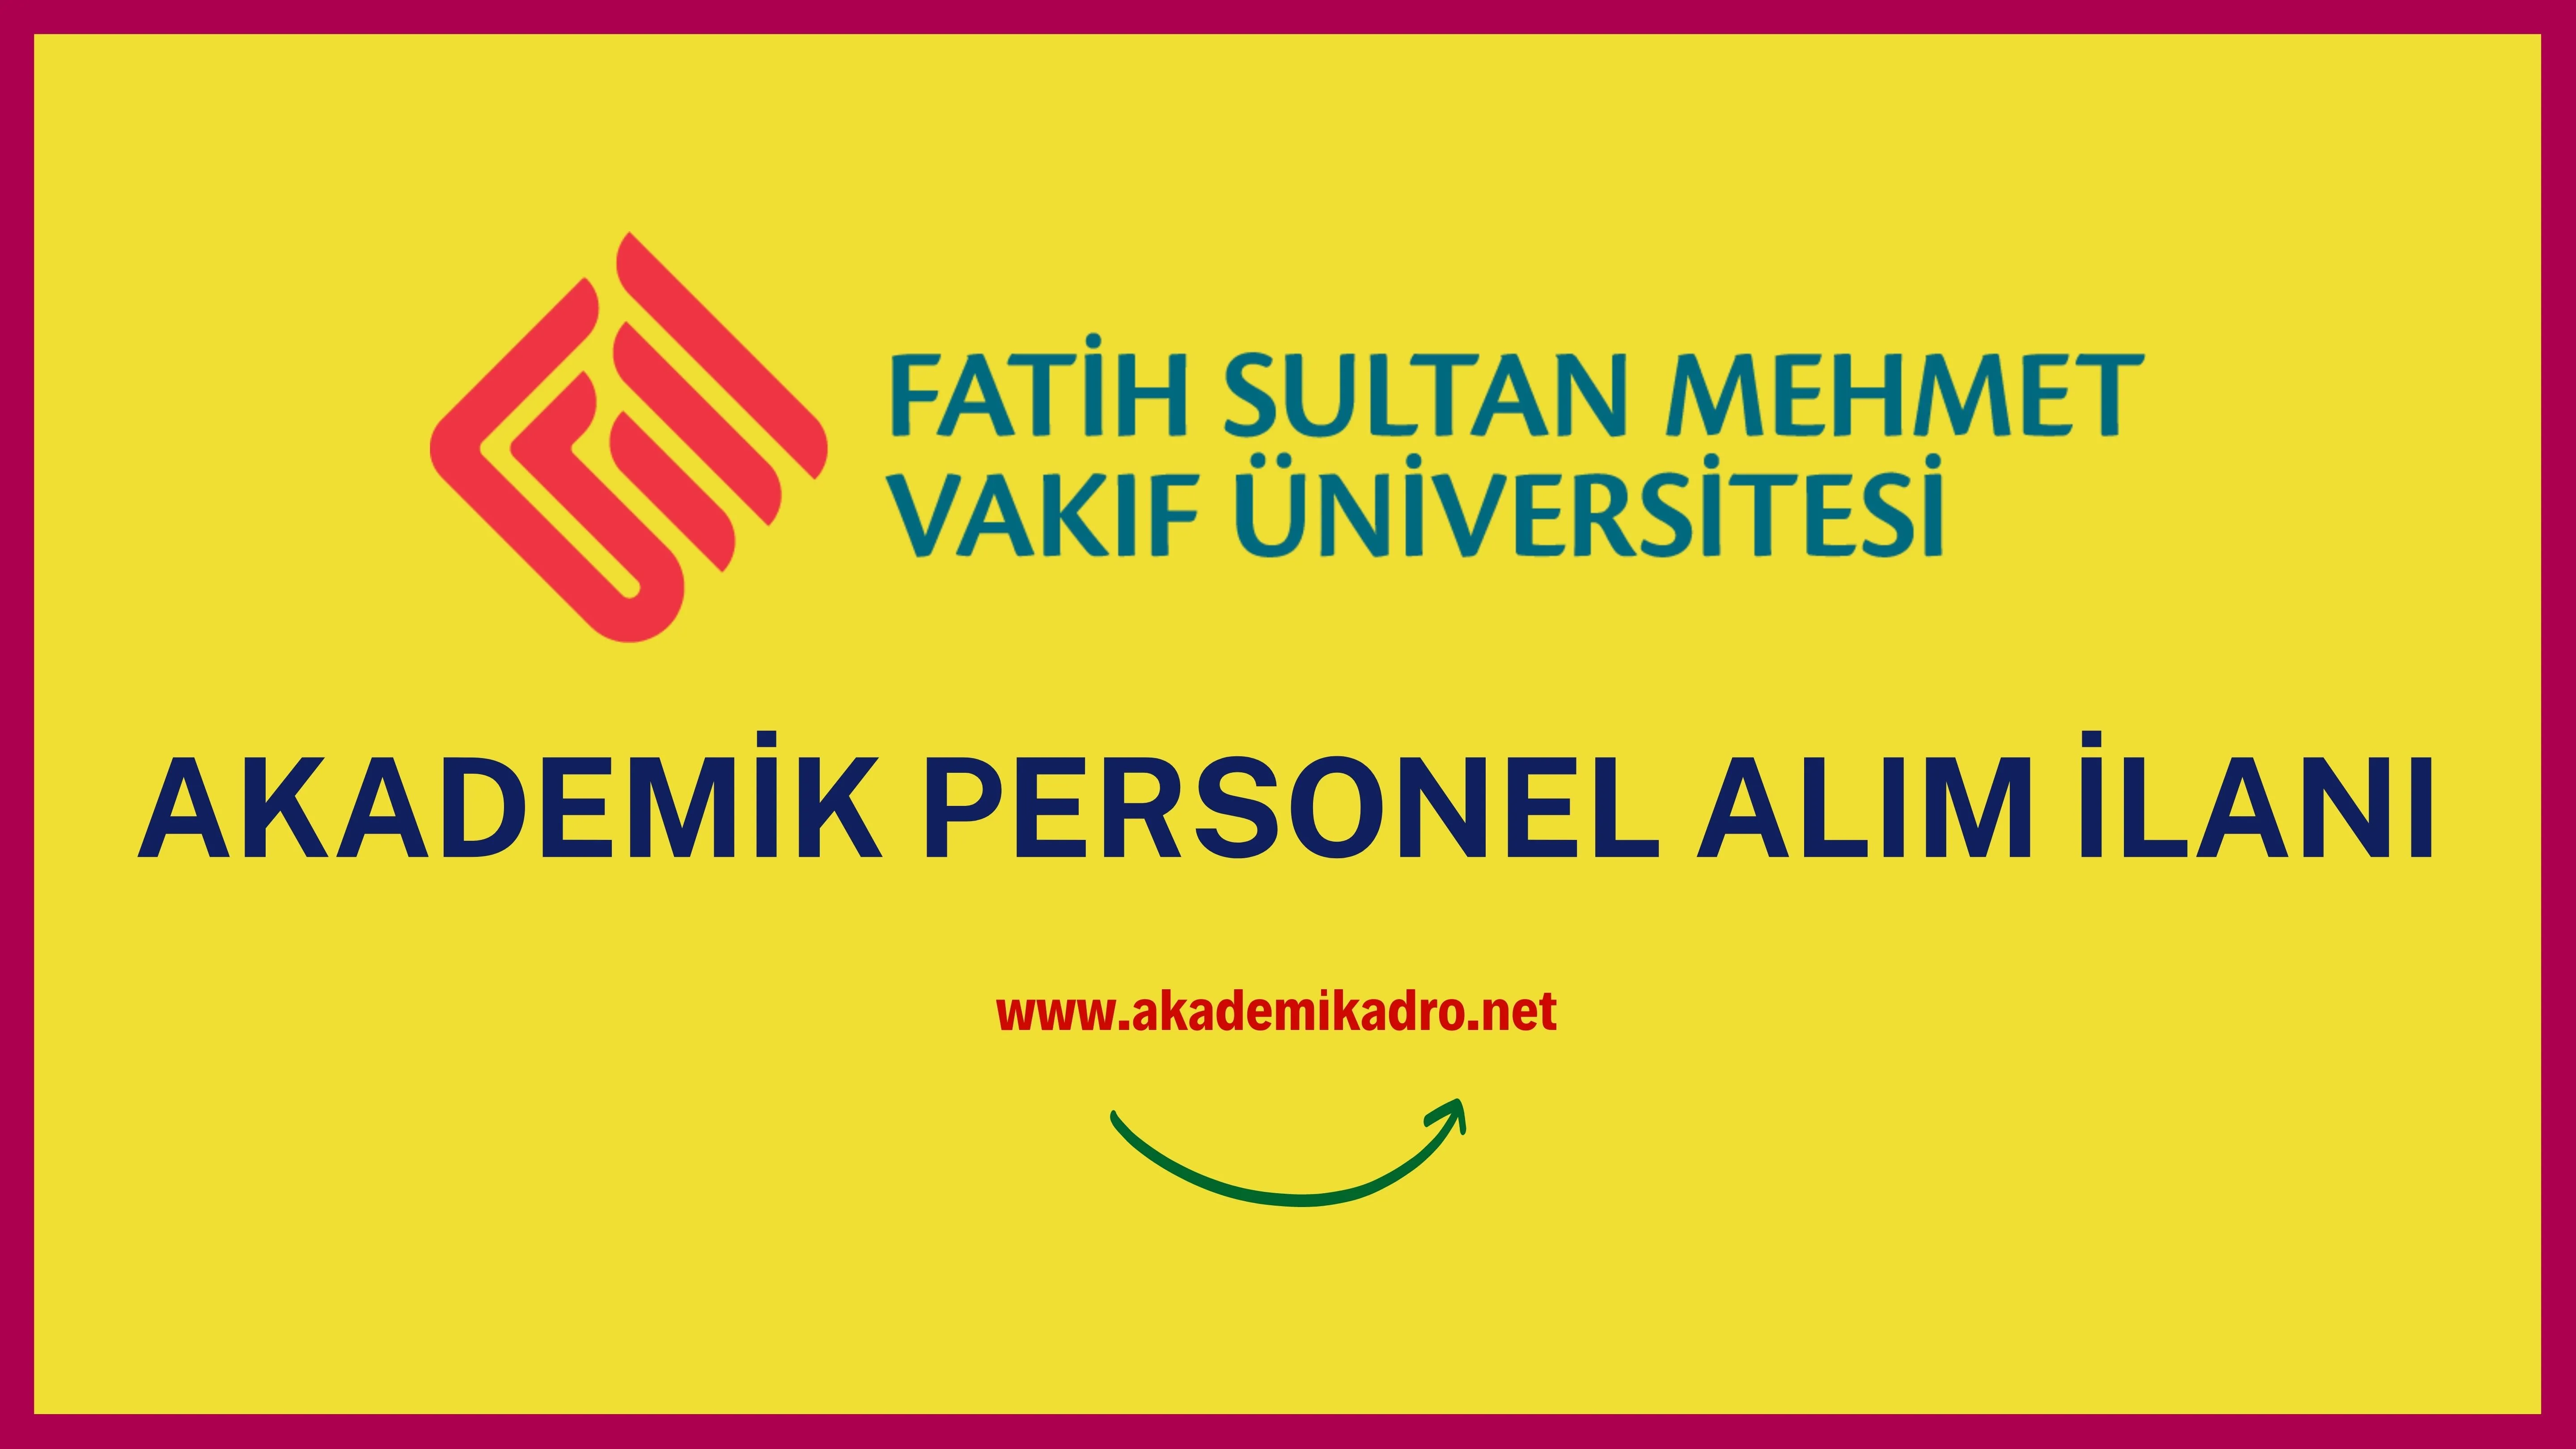 Fatih Sultan Mehmet Vakıf Üniversitesi çeşitli branşlarda 7 akademik personel alacak.